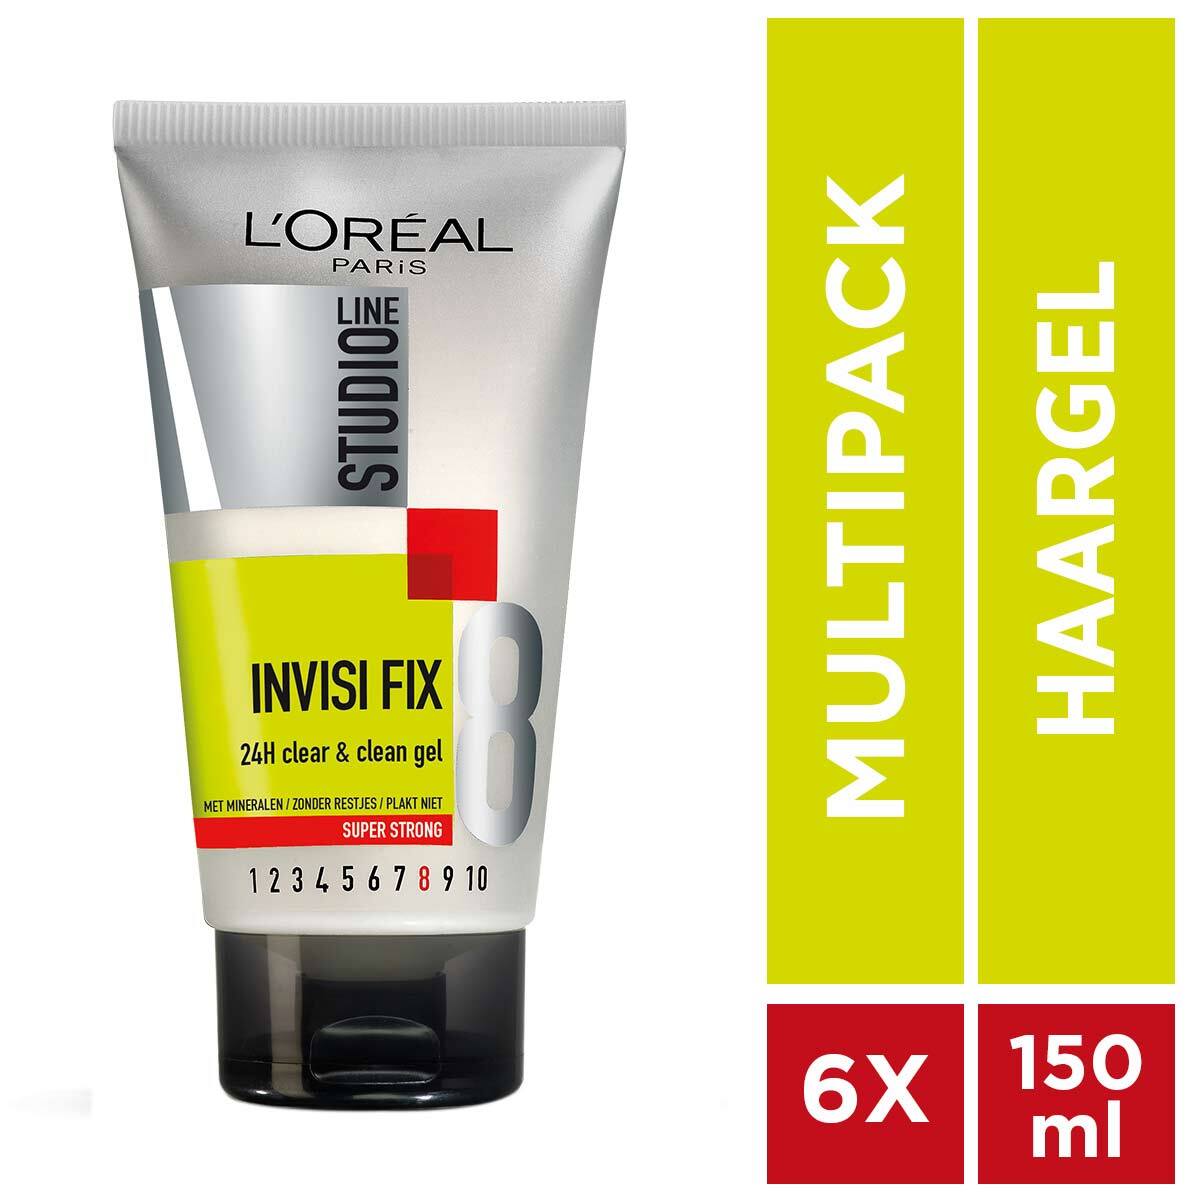 L'Oréal Invisi'Fix Studio Line Invisi'fix 24h Gel - 6 x 150 ml - Voordeelverpakking - Super Sterke Fixatie Tube Haargel